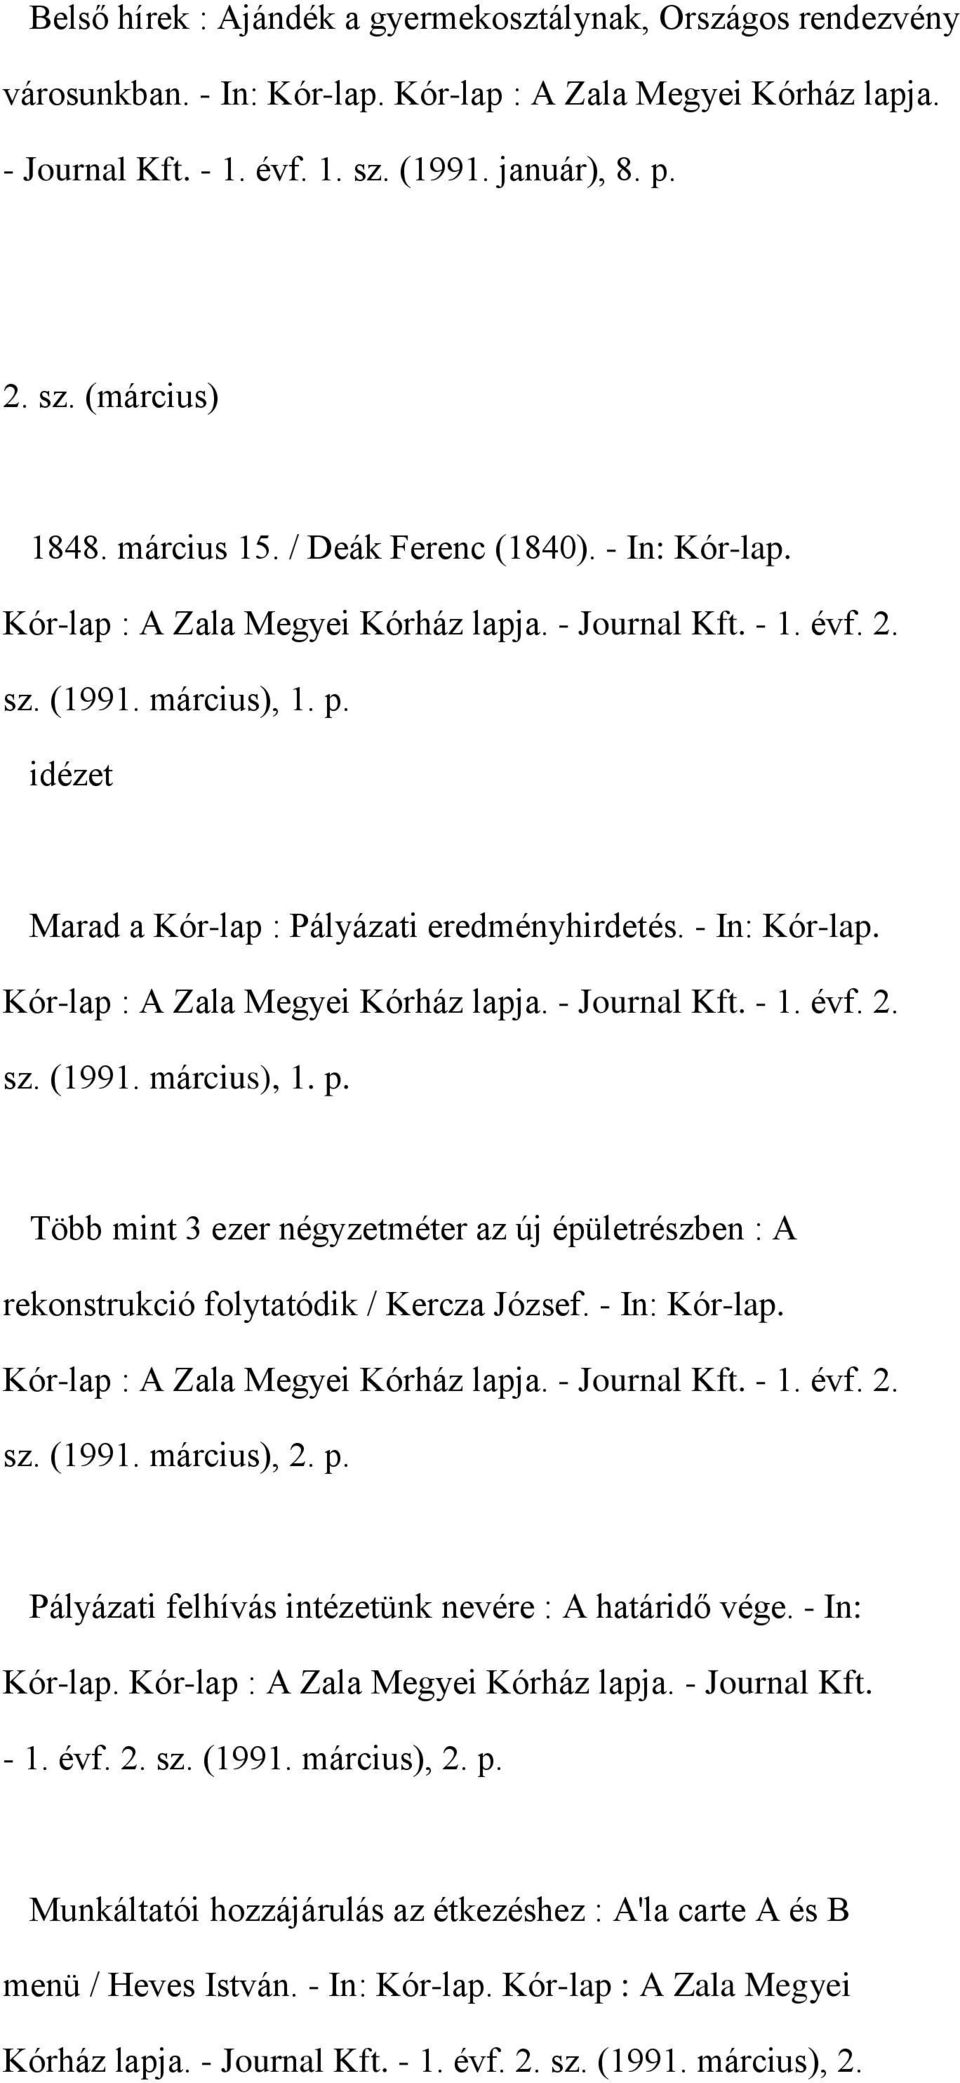 - In: Kór-lap. Kór-lap : A Zala Megyei Kórház lapja. - Journal Kft. - 1. évf. 2. sz. (1991. március), 1. p.